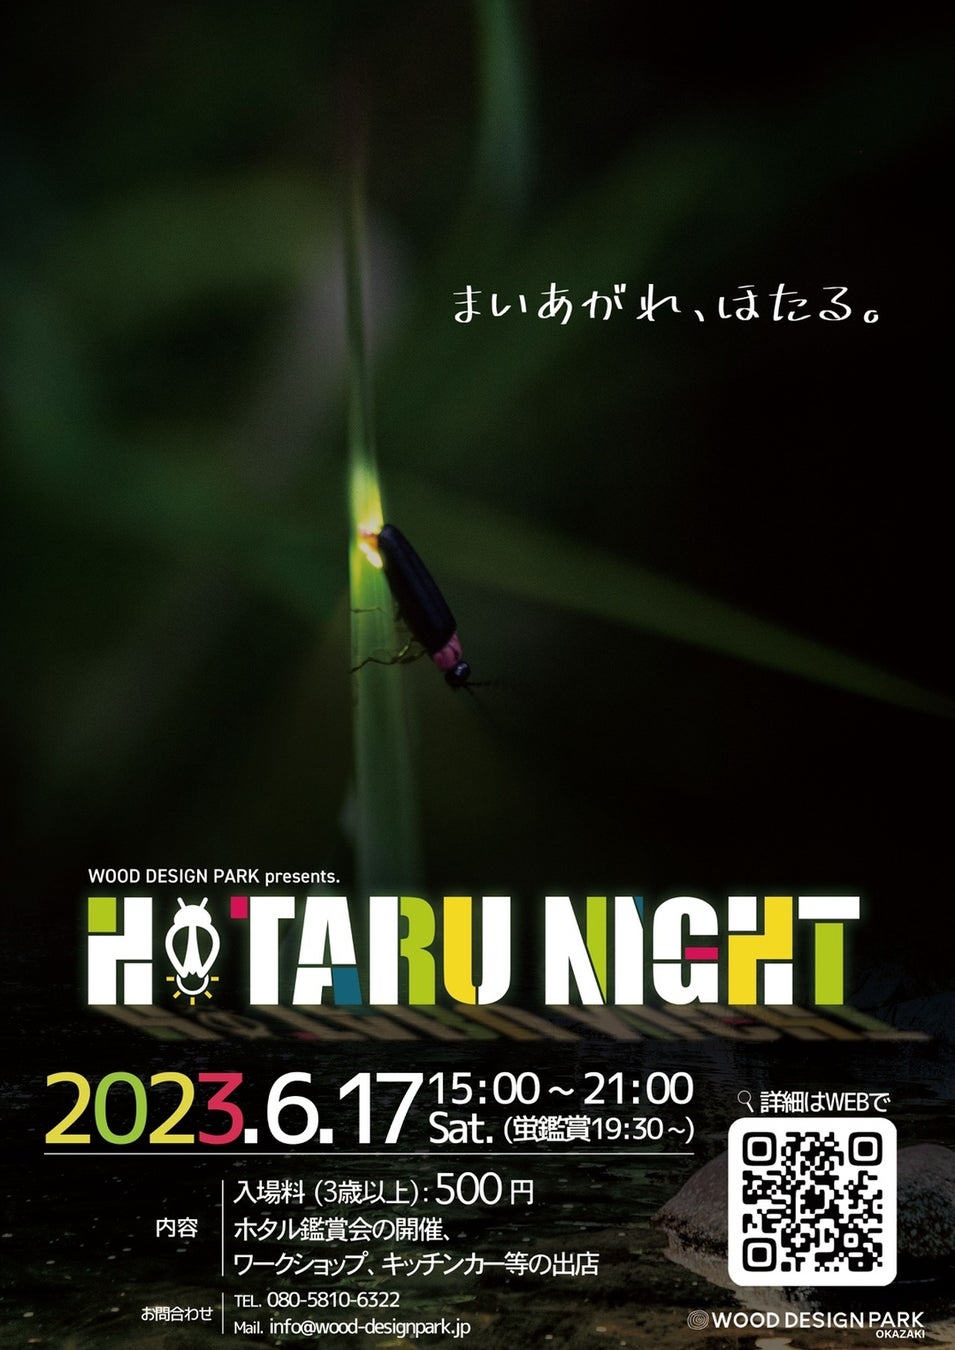 「まいあがれ、ほたる。」愛知県岡崎市の清流乙川で幻想的なホタルの舞を楽しむ「HOTARU NIGHT 2023」2023年6月17日開催。